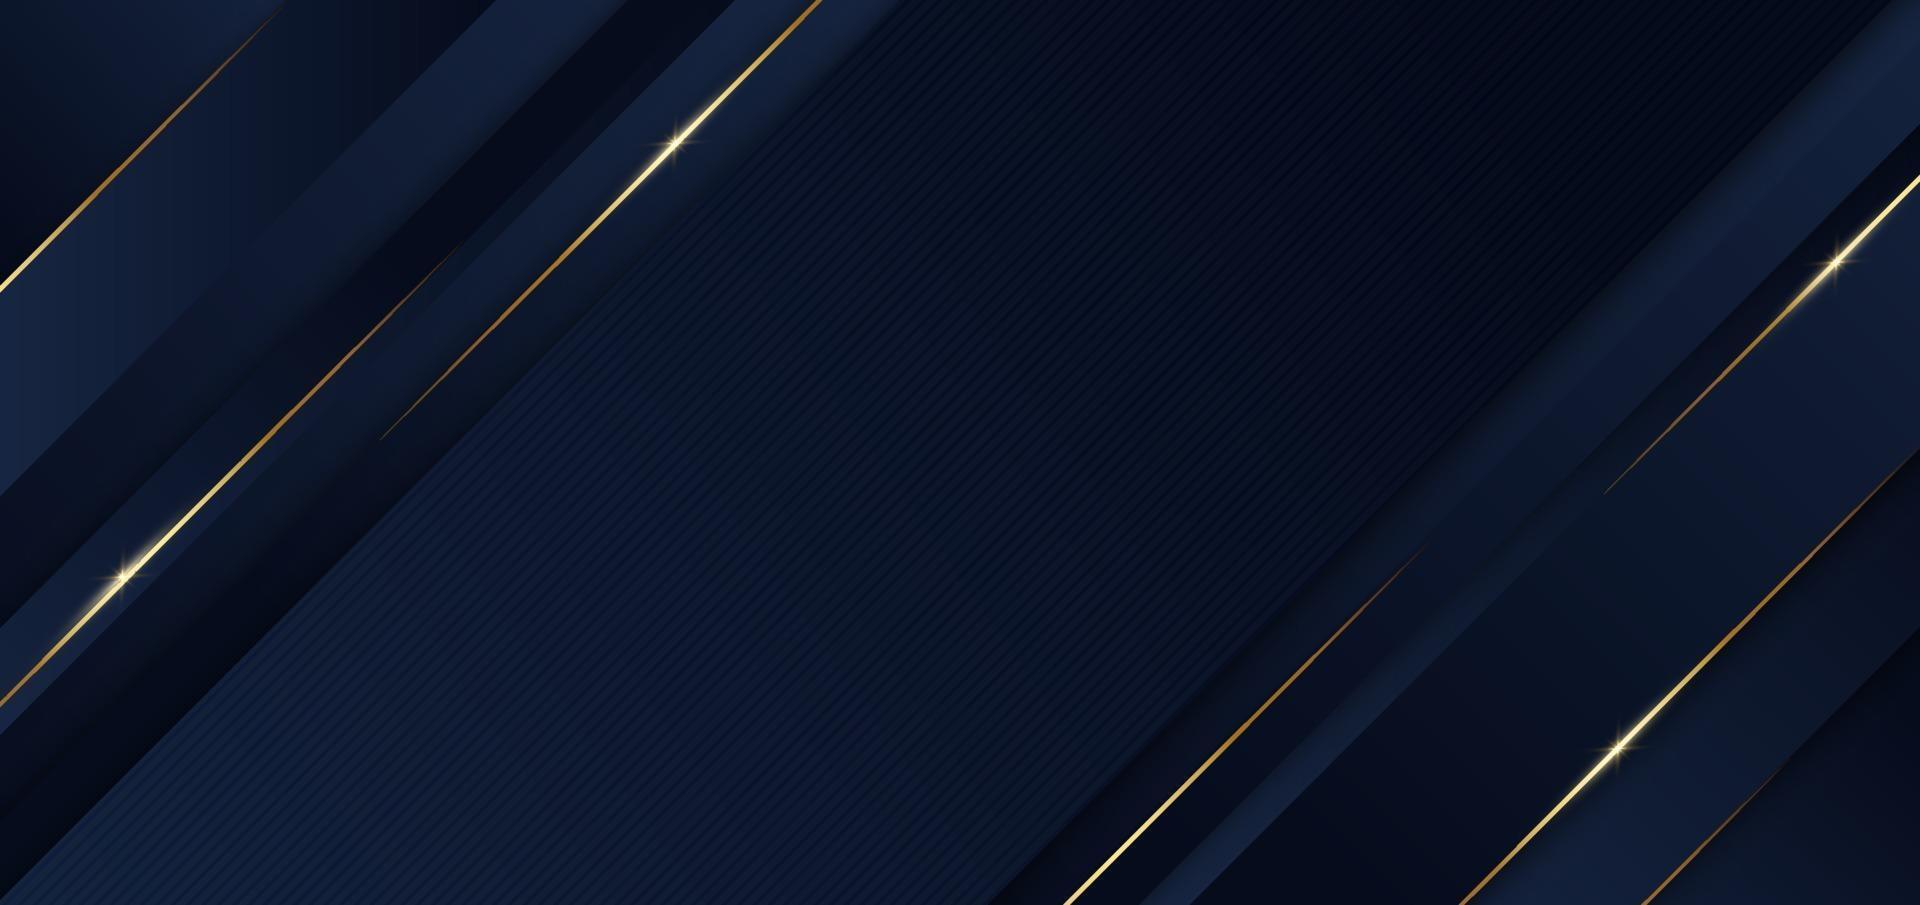 abstracte sjabloon blauwe geometrische diagonale achtergrond met gouden lijn. luxe stijl. vector